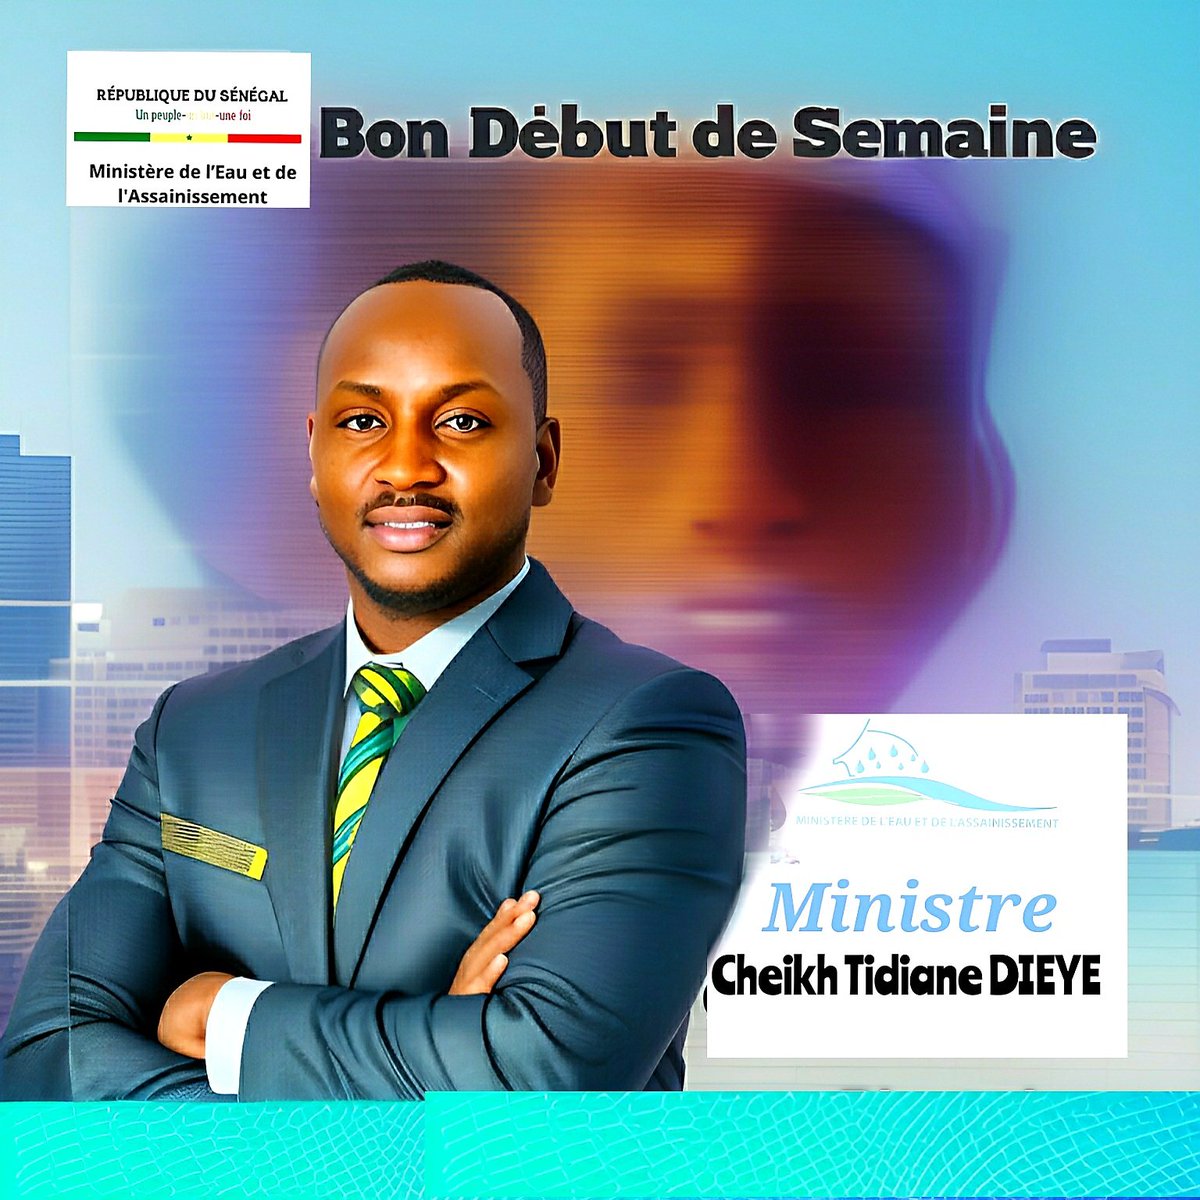 Après 1 week-end rempli de calme,de repos et de moments  avec vos proche,il vient une nouvelle semaine qui est  remplie d'objectifs à accomplir et des obligations quotidiennes;Ministre M. @cheikhtdieye  vous souhaite #bondebutdesemaine
SEM @PR_Diomaye @SonkoOfficiel  @PR_Senegal